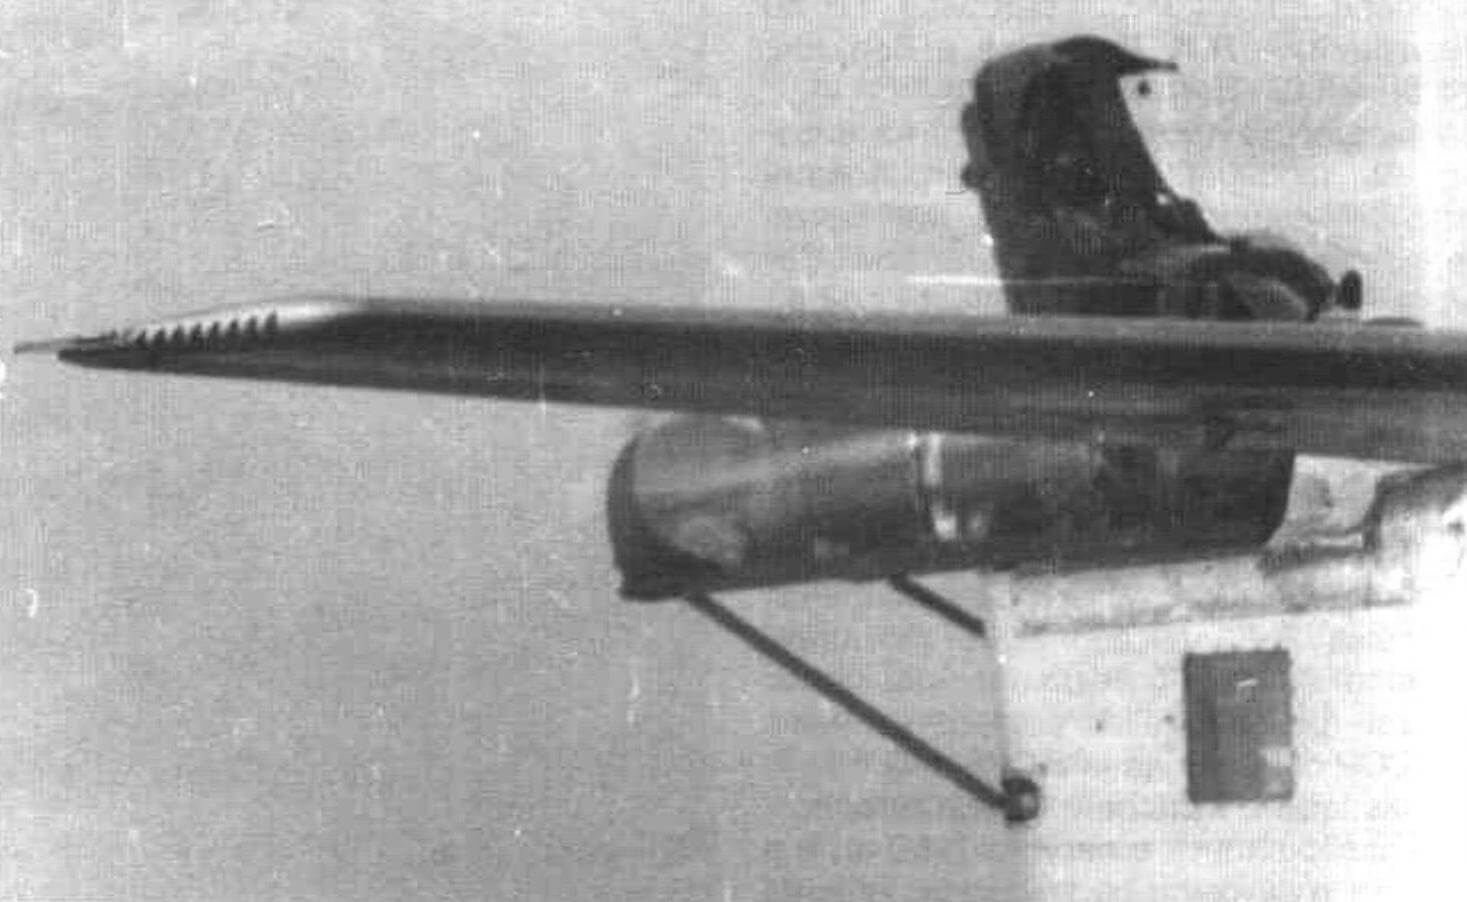 Катапультирование манекена из макета переднем кабины Як-30, установленного на летающей лаборатории Ил-28ЛЛ